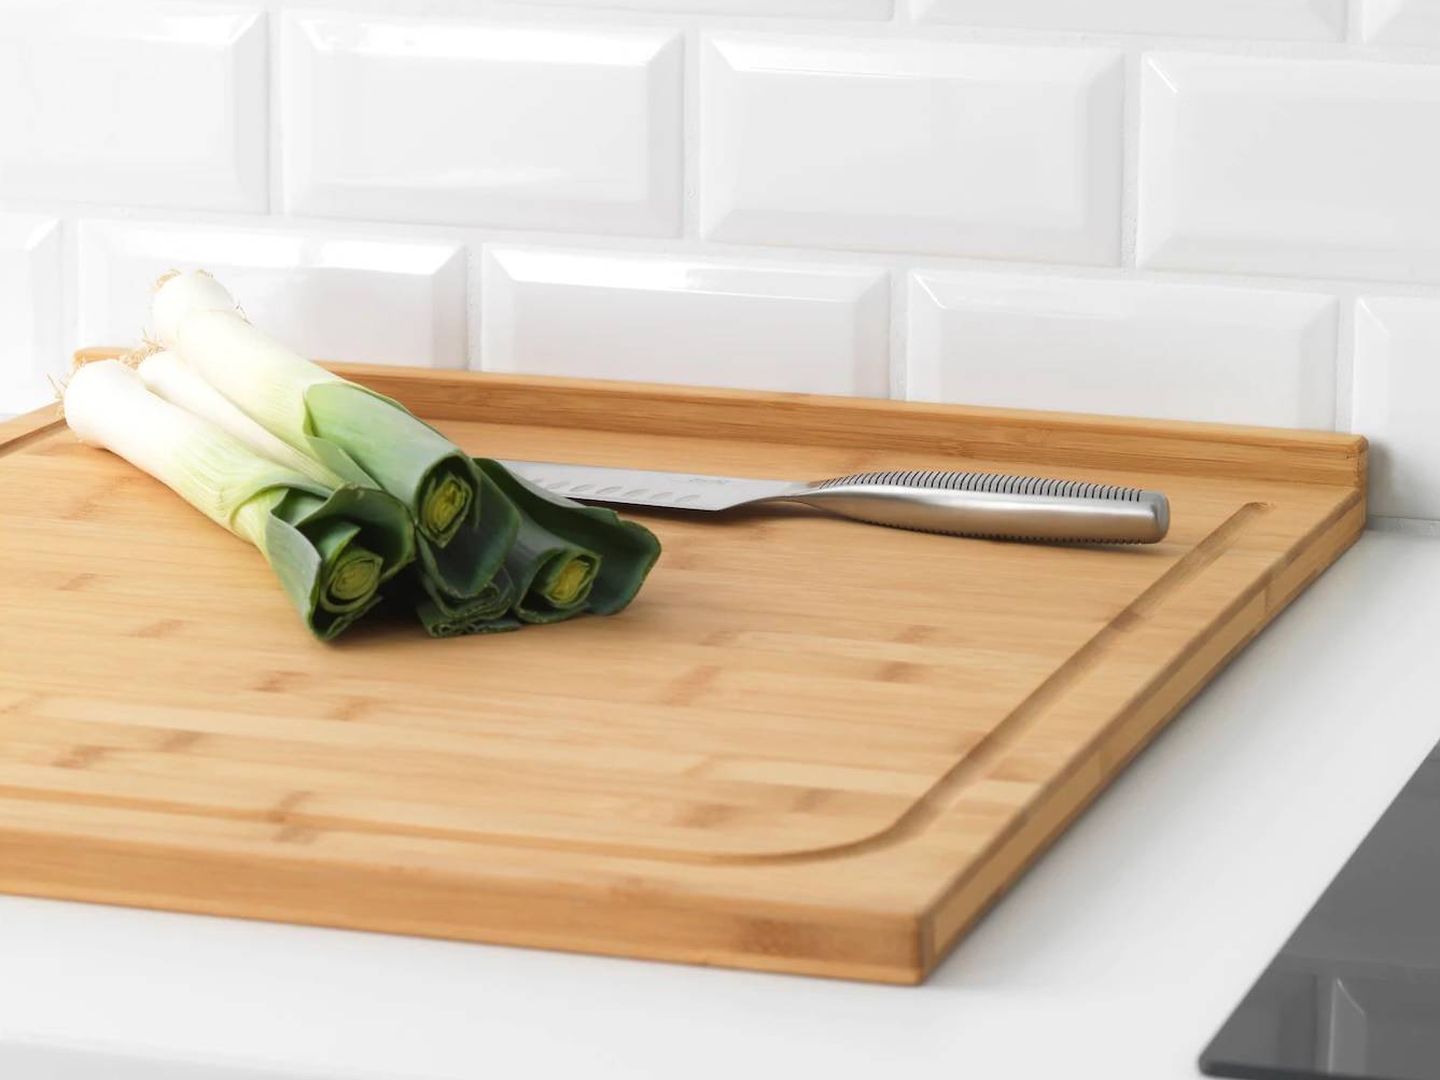 Completa tu cocina con estos elementos de Ikea. (Cortesía)